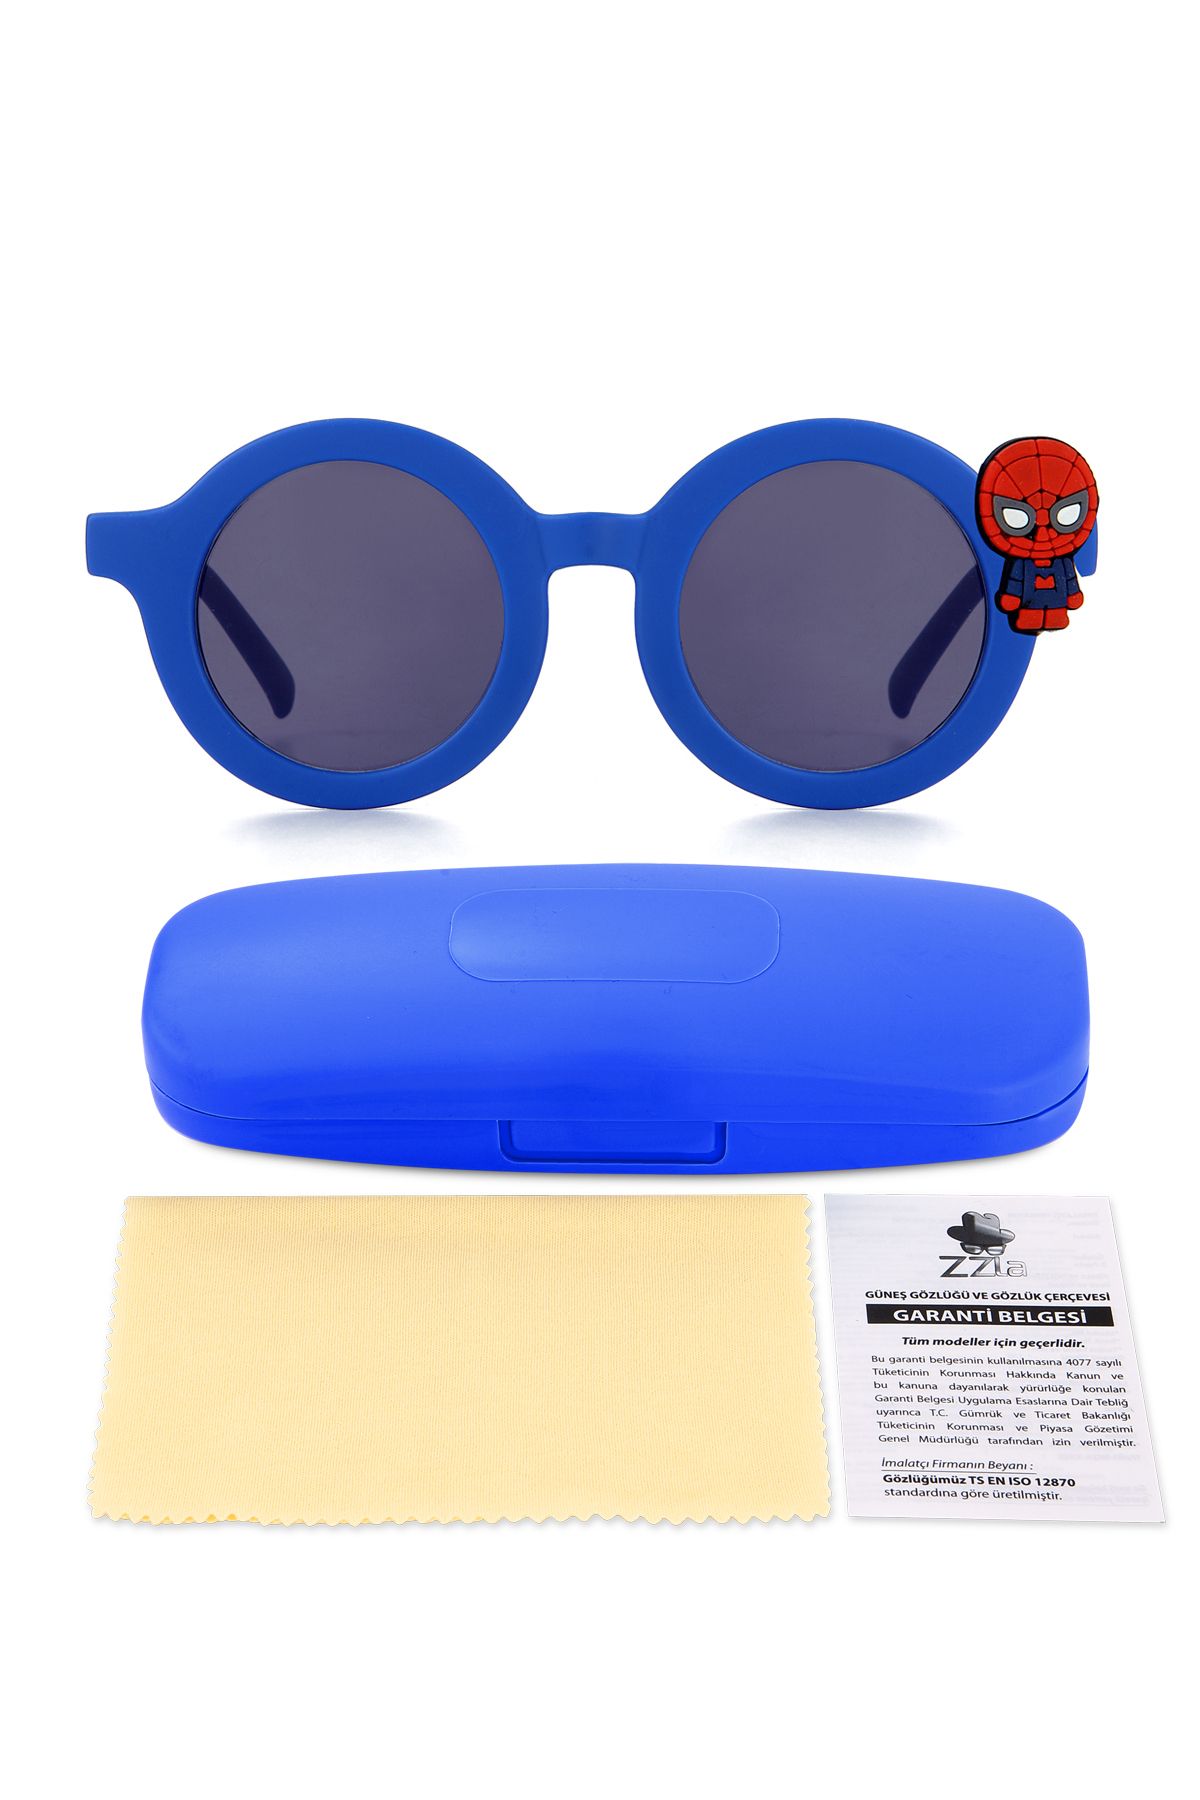 Zzla UV400 Korumalı Fügürlü Çocuk Güneş Gözlüğü Renkli Kutu Hediyeli